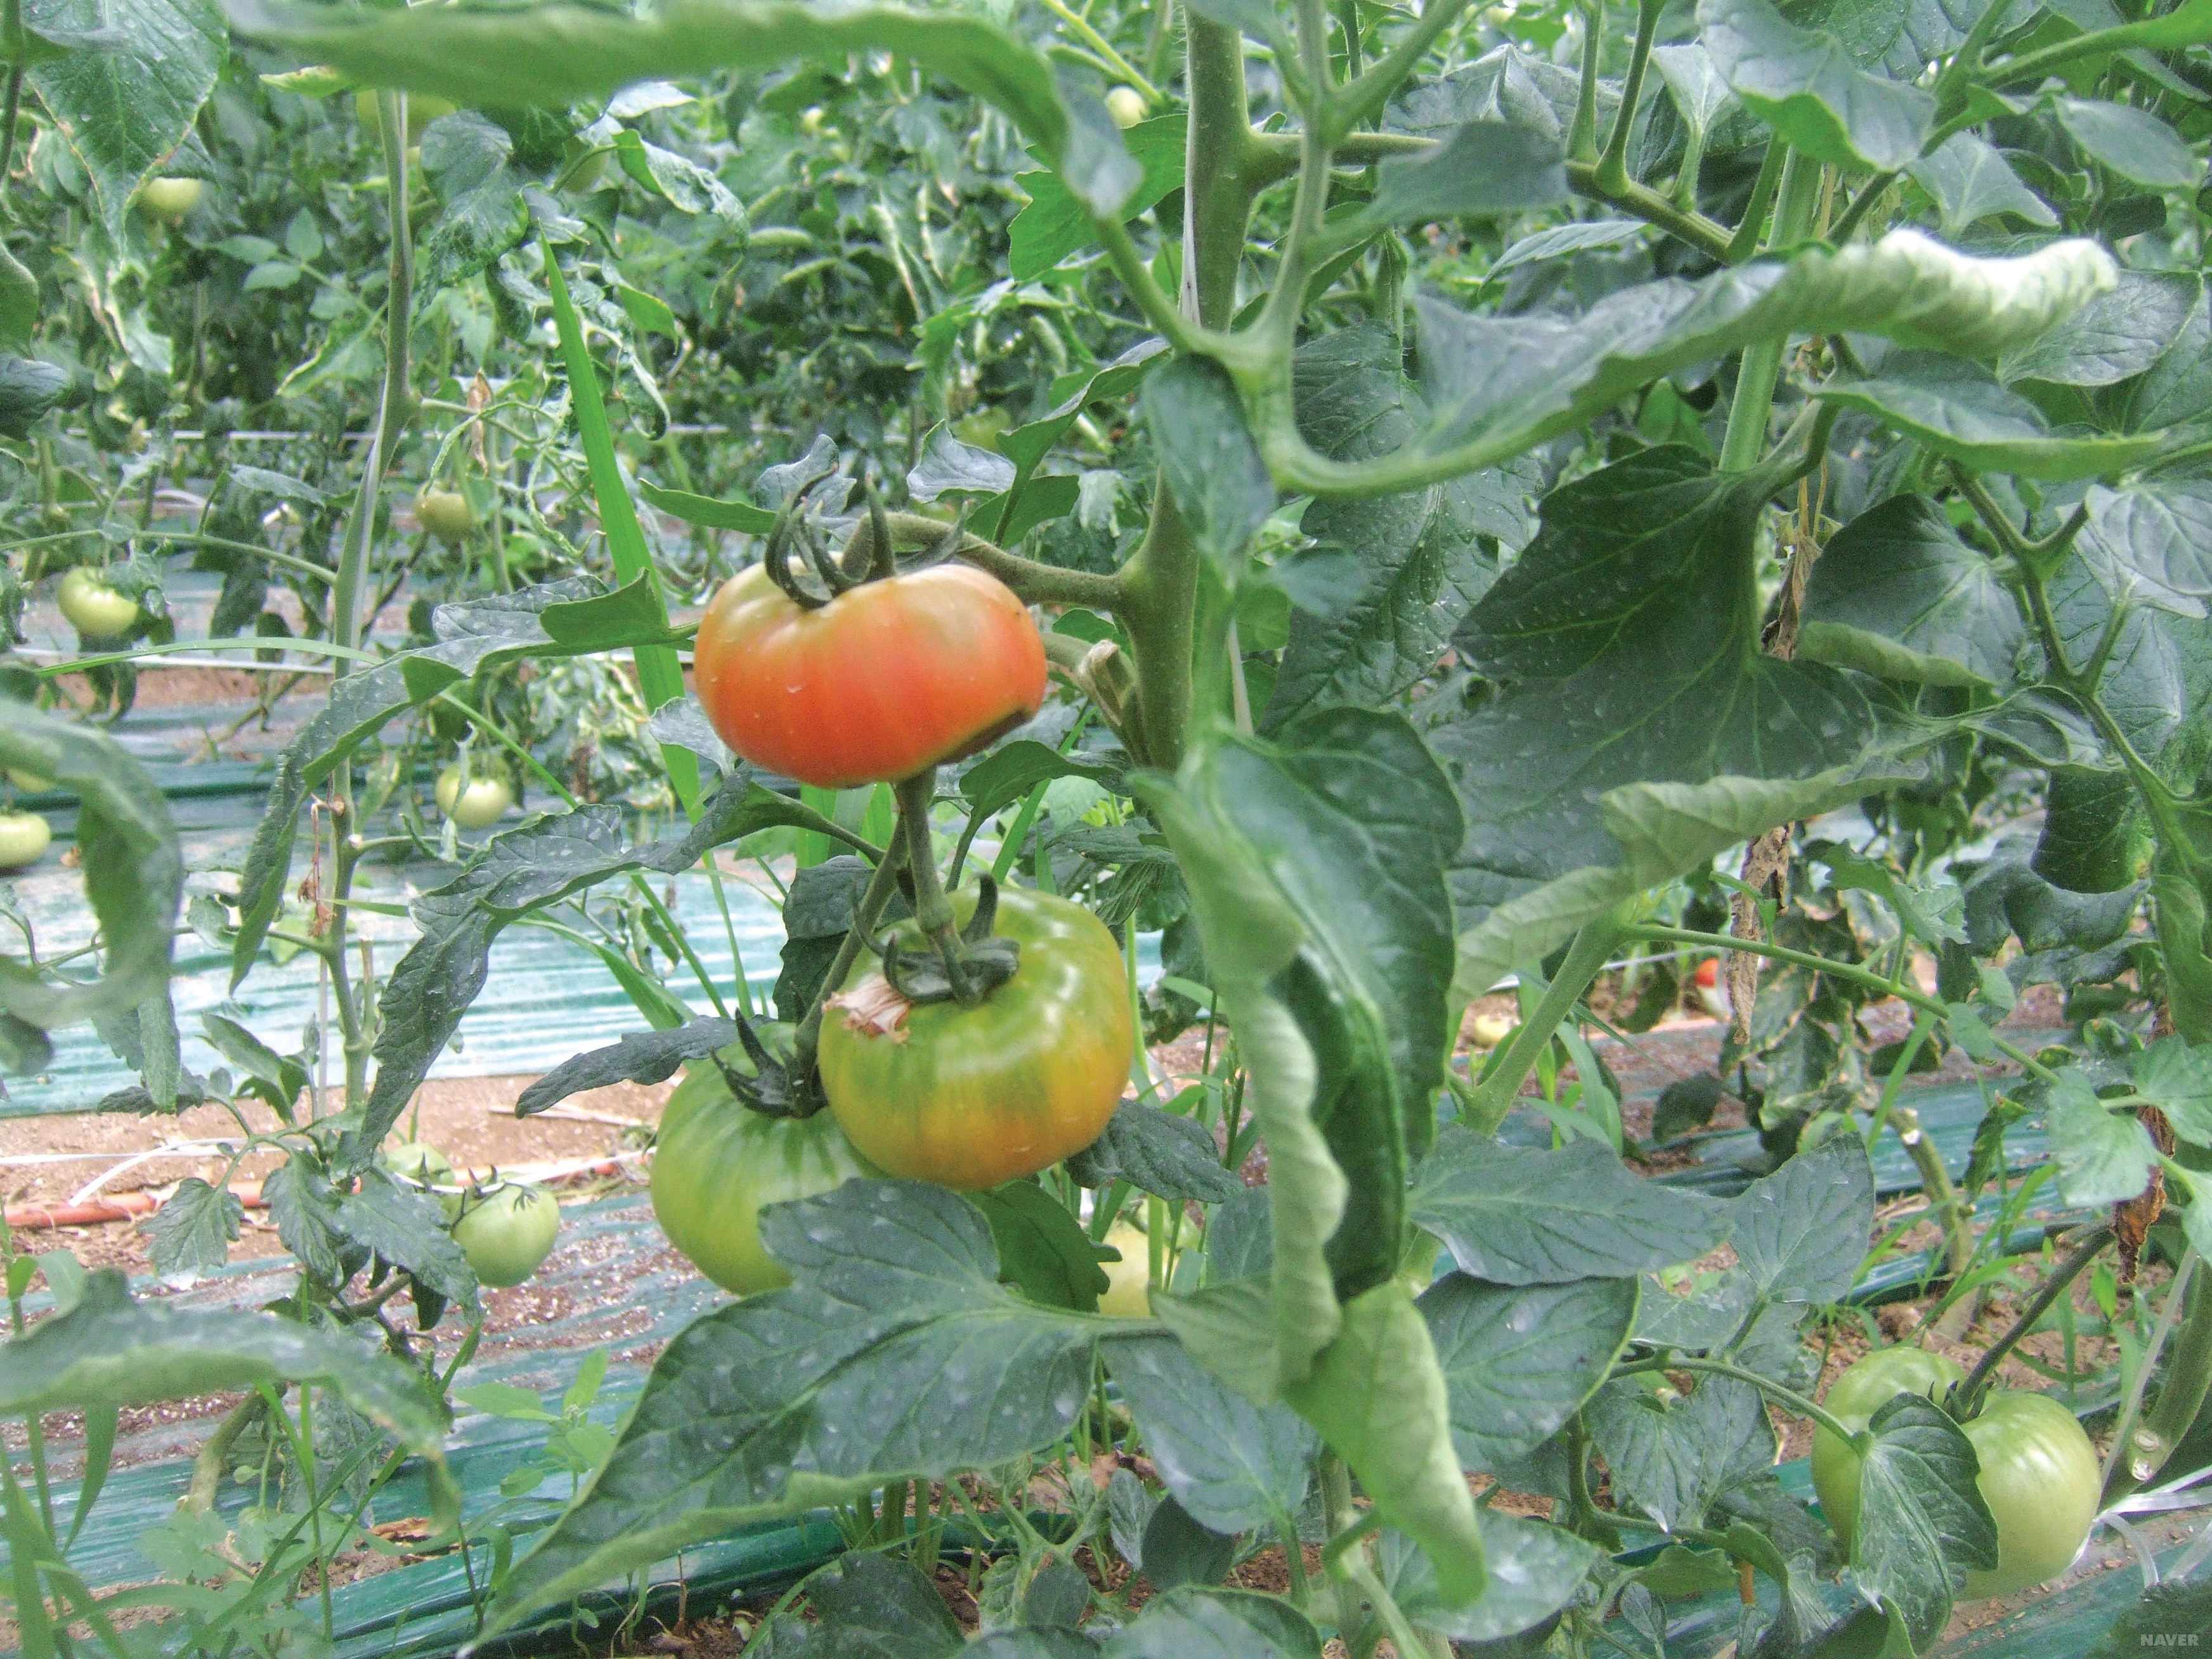 비타민과 무기질의 급원 식품인 토마토